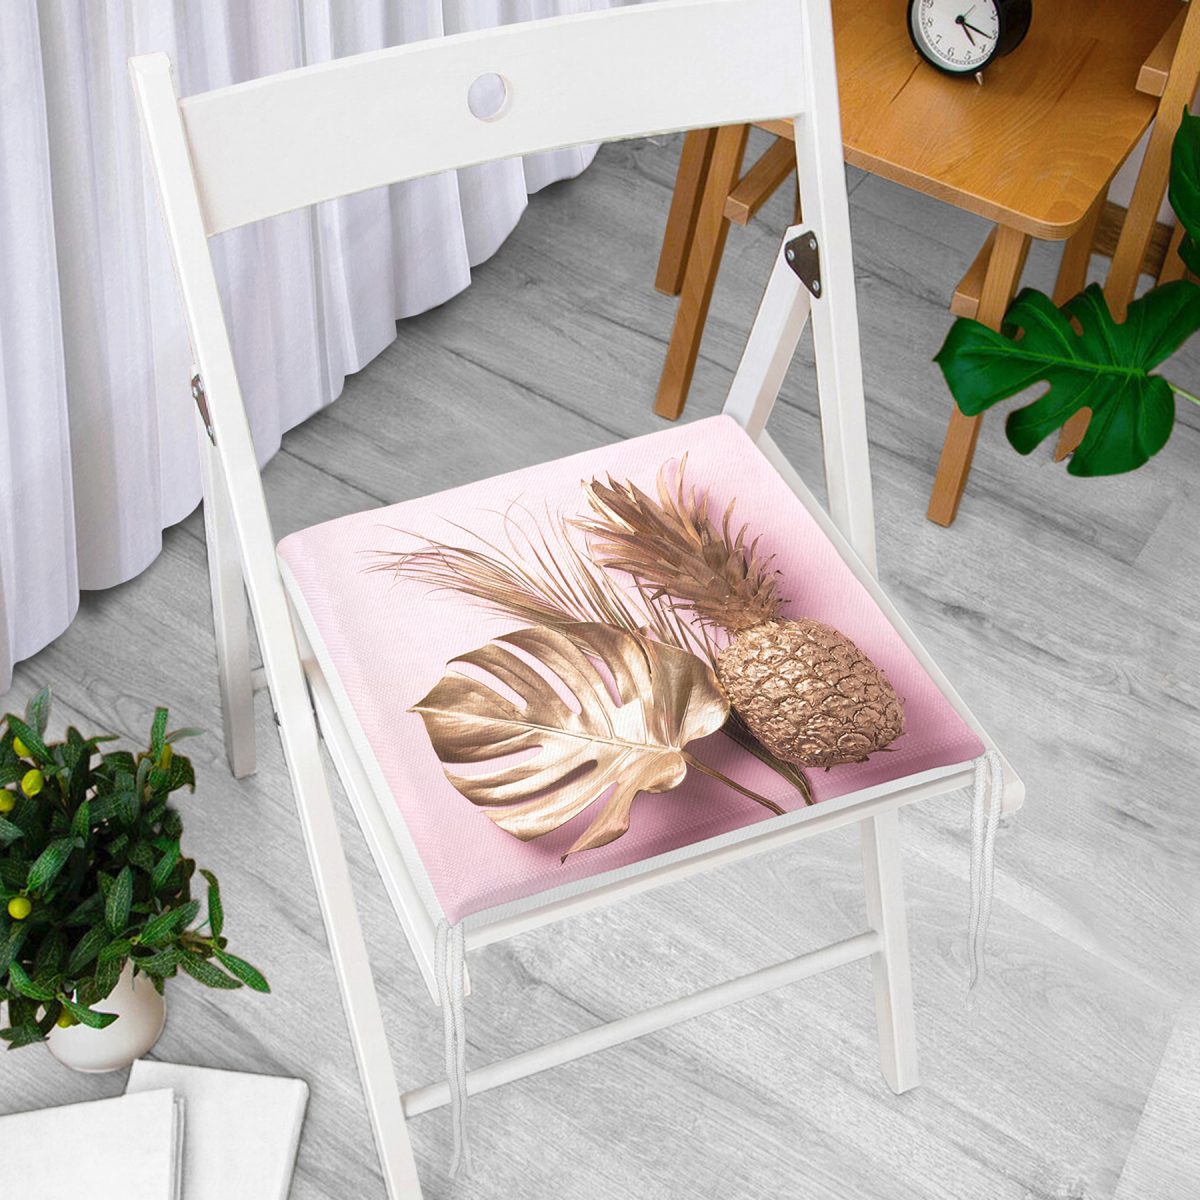 3D Yaprak ve Ananas Desenli Özel Tasarım Fermuarlı Sandalye Minderi Realhomes